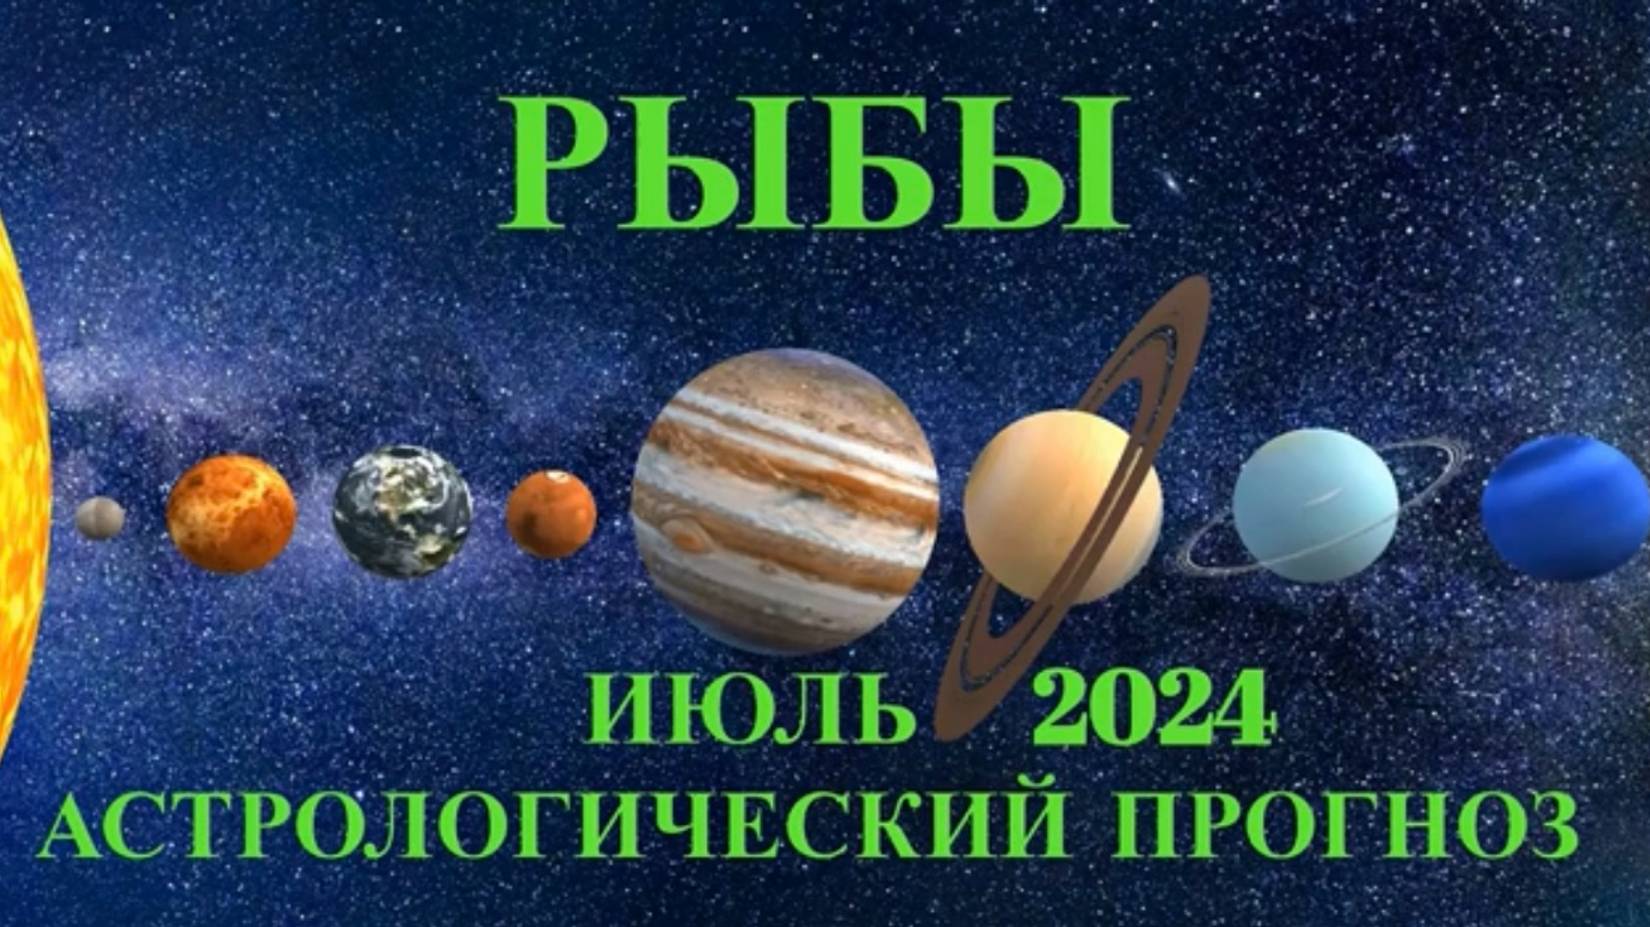 РЫБЫ - АСТРОЛОГИЧЕСКИЙ ПРОГНОЗ на ИЮЛЬ 2024 года!!!